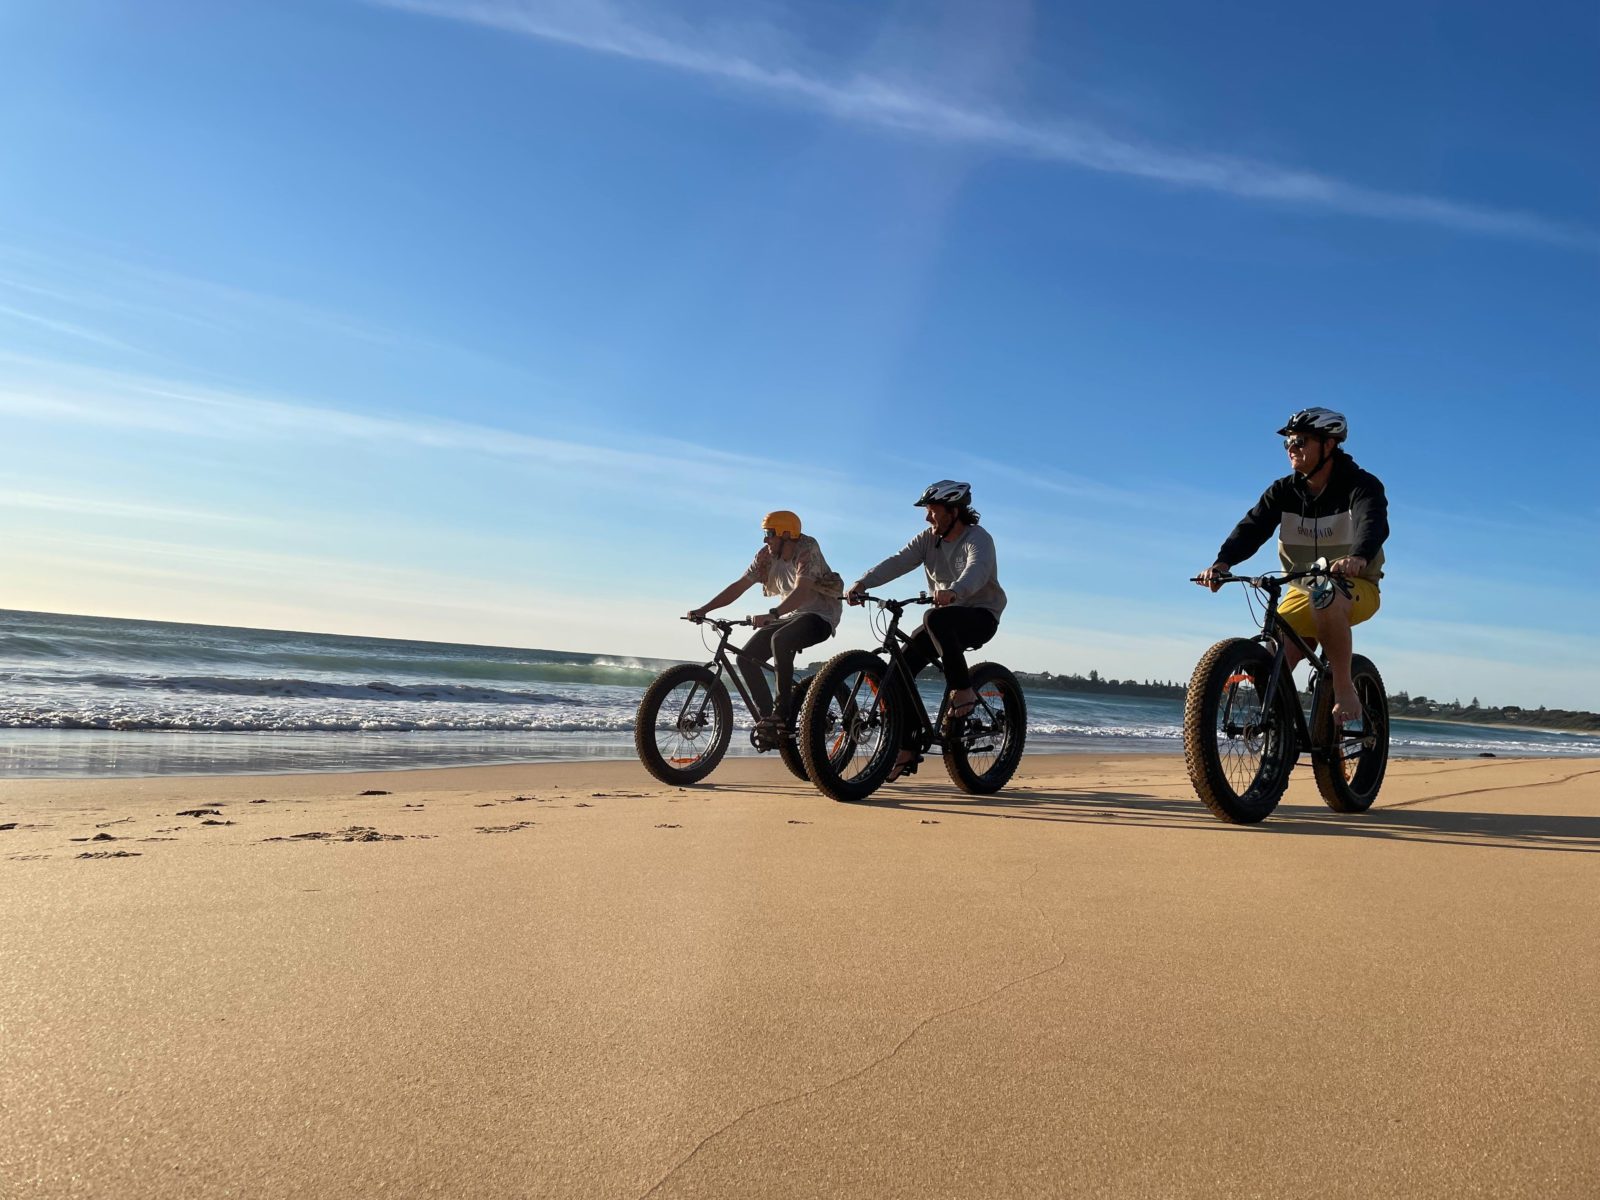 Three bike riders on the beach